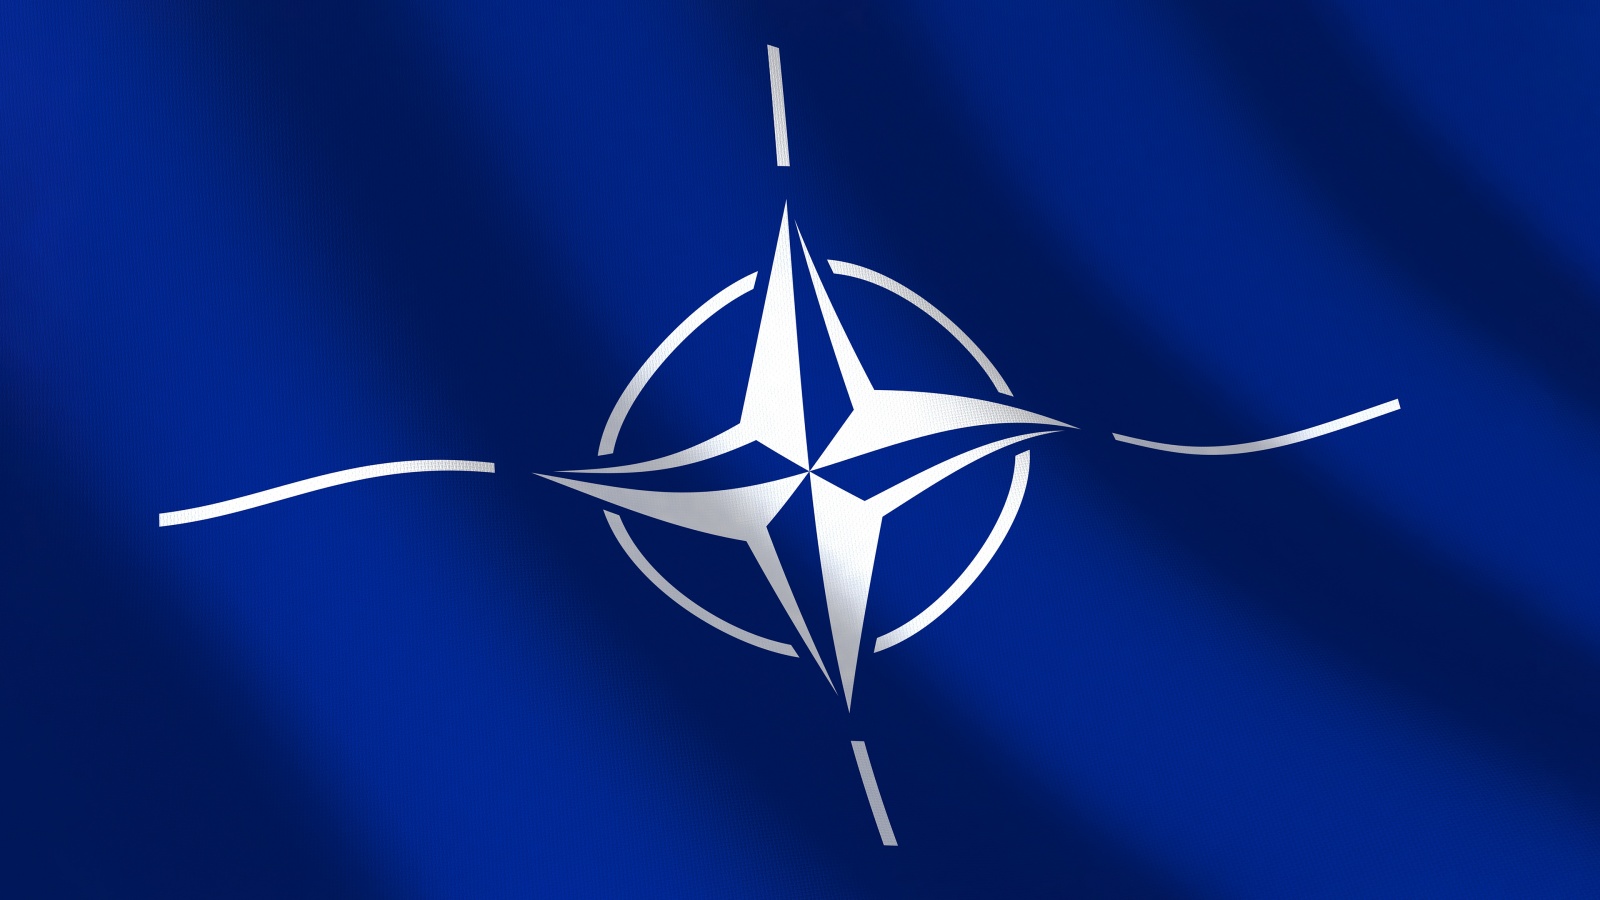 NATO Crescut Numarul Patrulelor Aeriene Tarile Aliate Europene